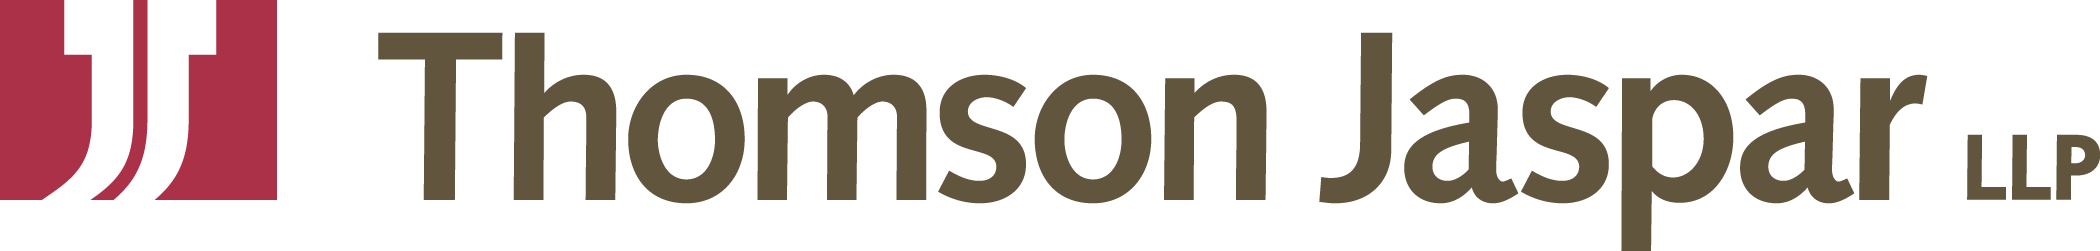 Thompson-Jaspar Logo